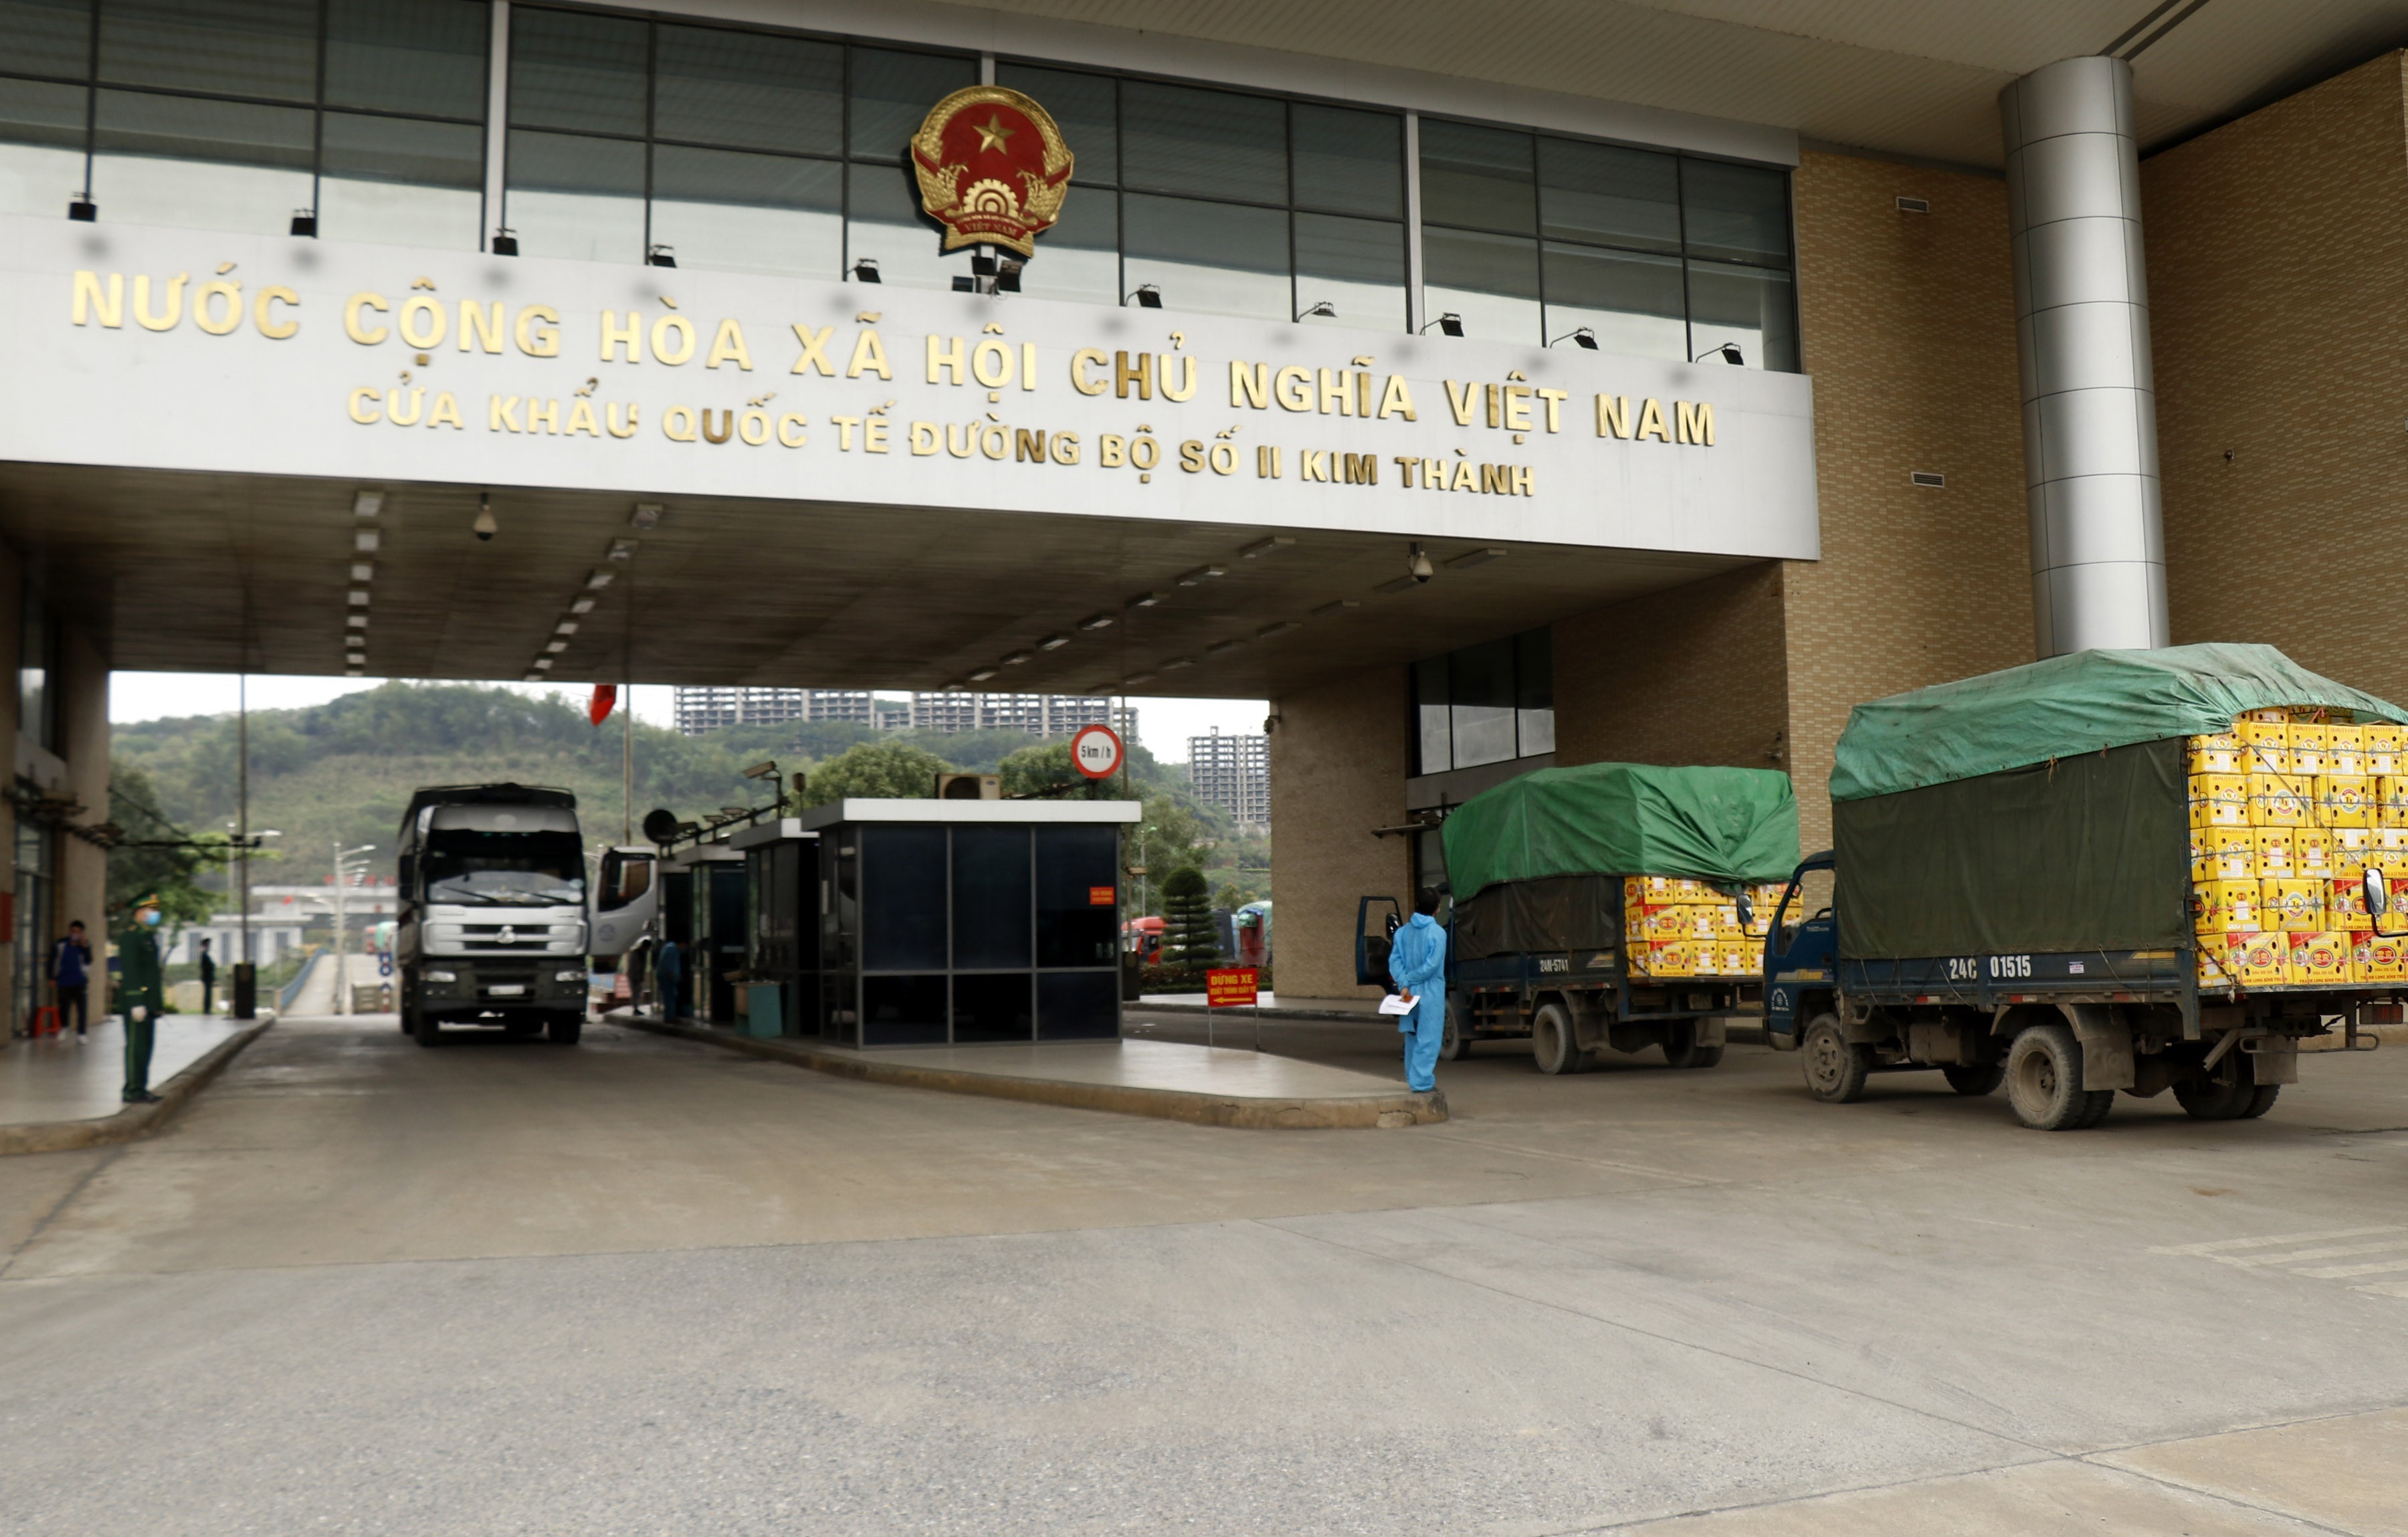 Các xe container đợi làm thủ tục xuất cảnh tại cửa khẩu quốc tế đường bộ số II Kim Thành. (Ảnh: Quốc Khánh - TTXVN)